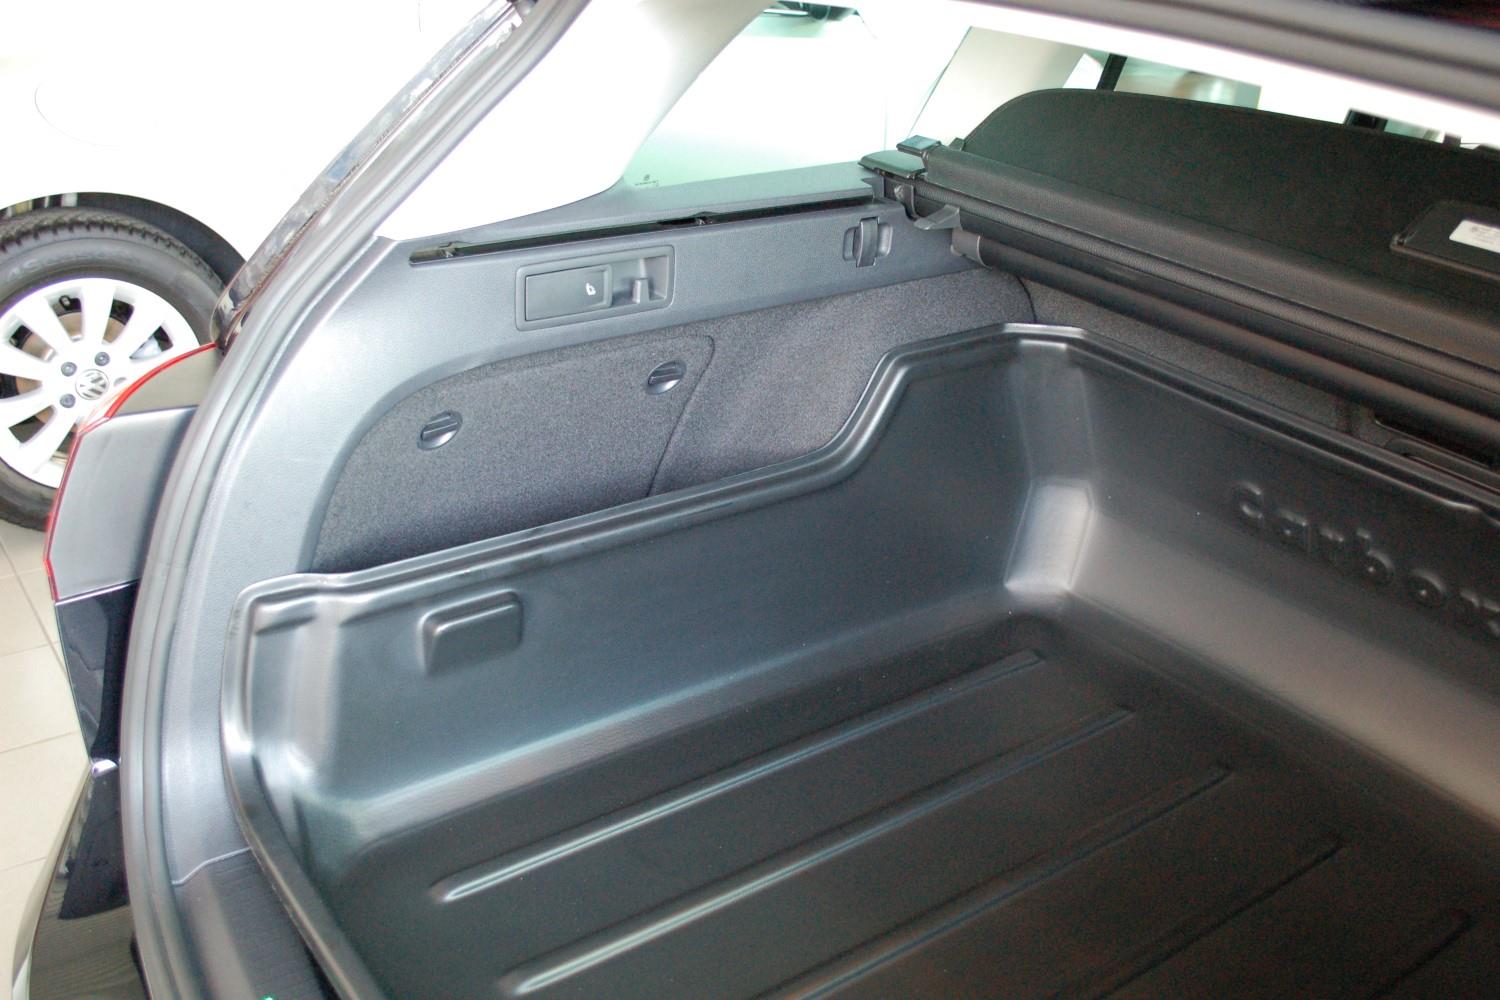 Boot mat Volkswagen Golf VII (5G) 2012-2020 3 & 5-door hatchback Cool Liner  anti slip PE/TPE rubber